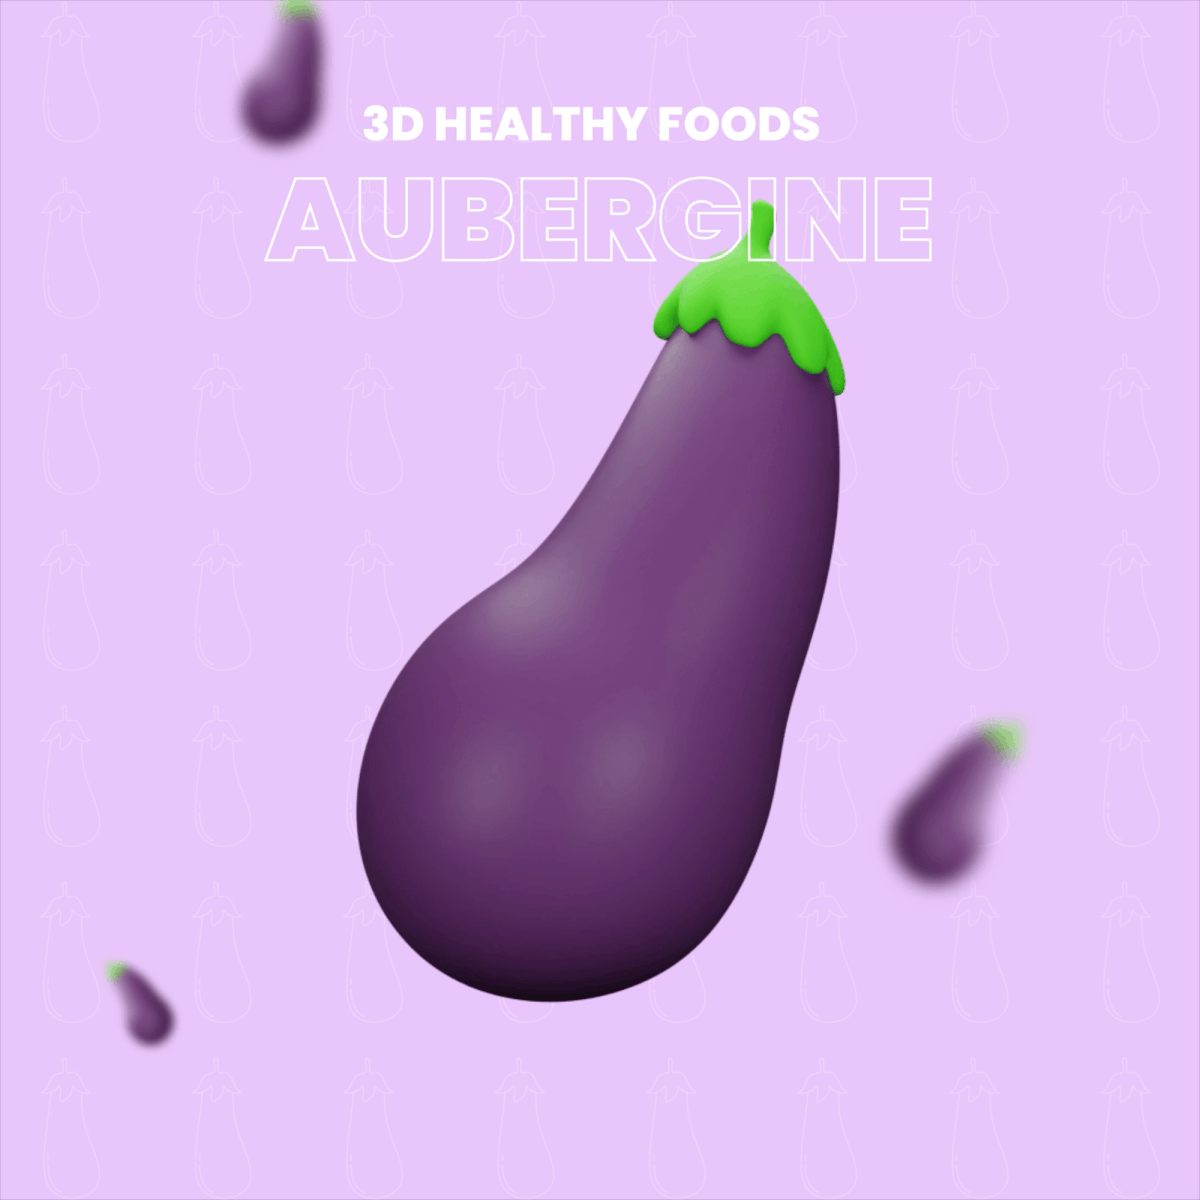 restaurant menu design 3D vegetables fruits Render blend healthy Food 